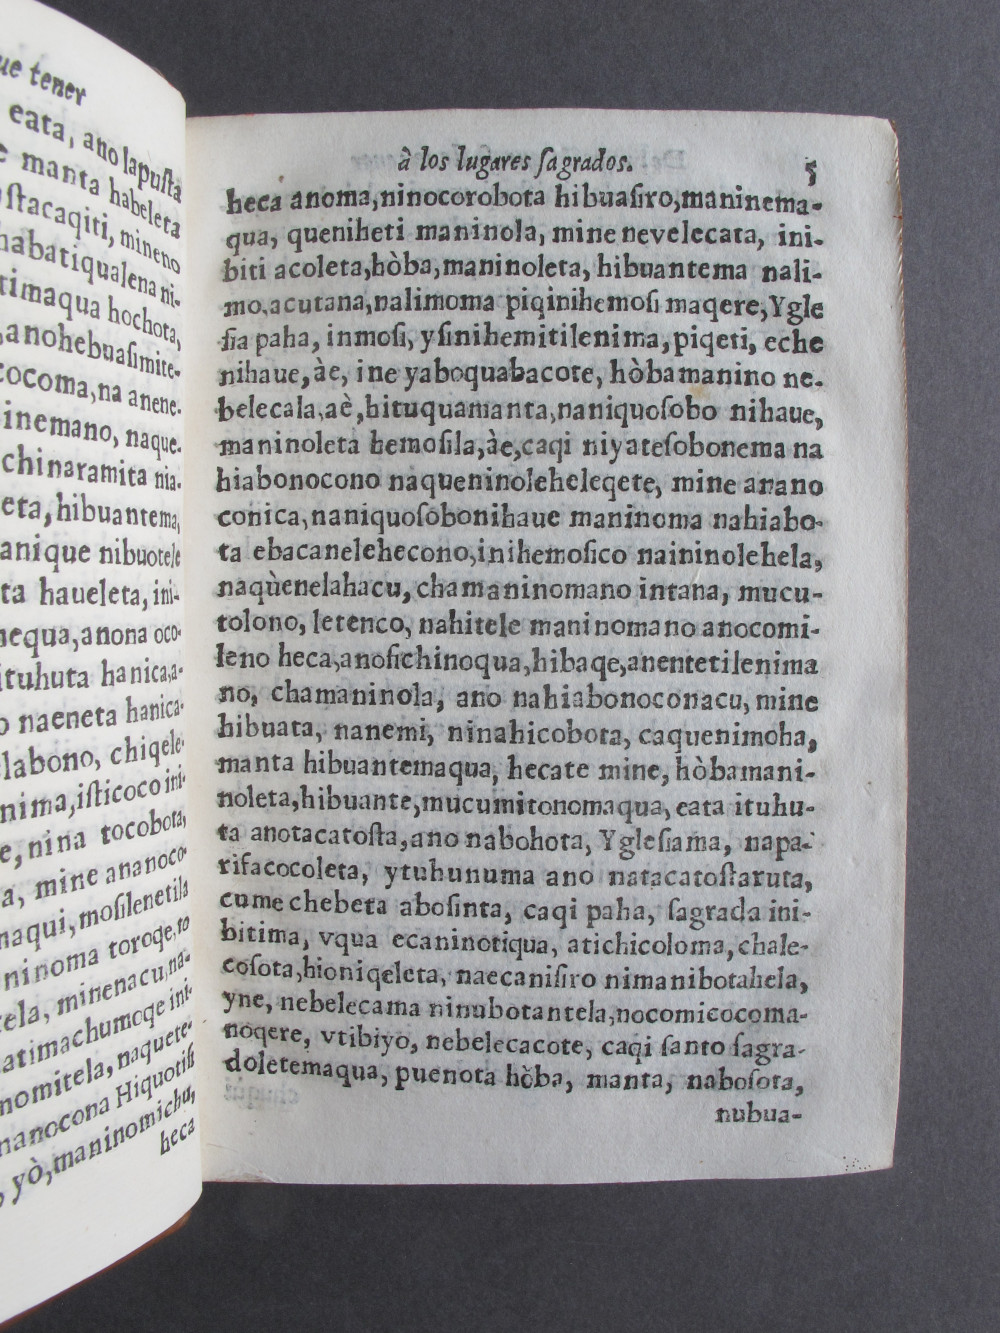 Folio A8 recto